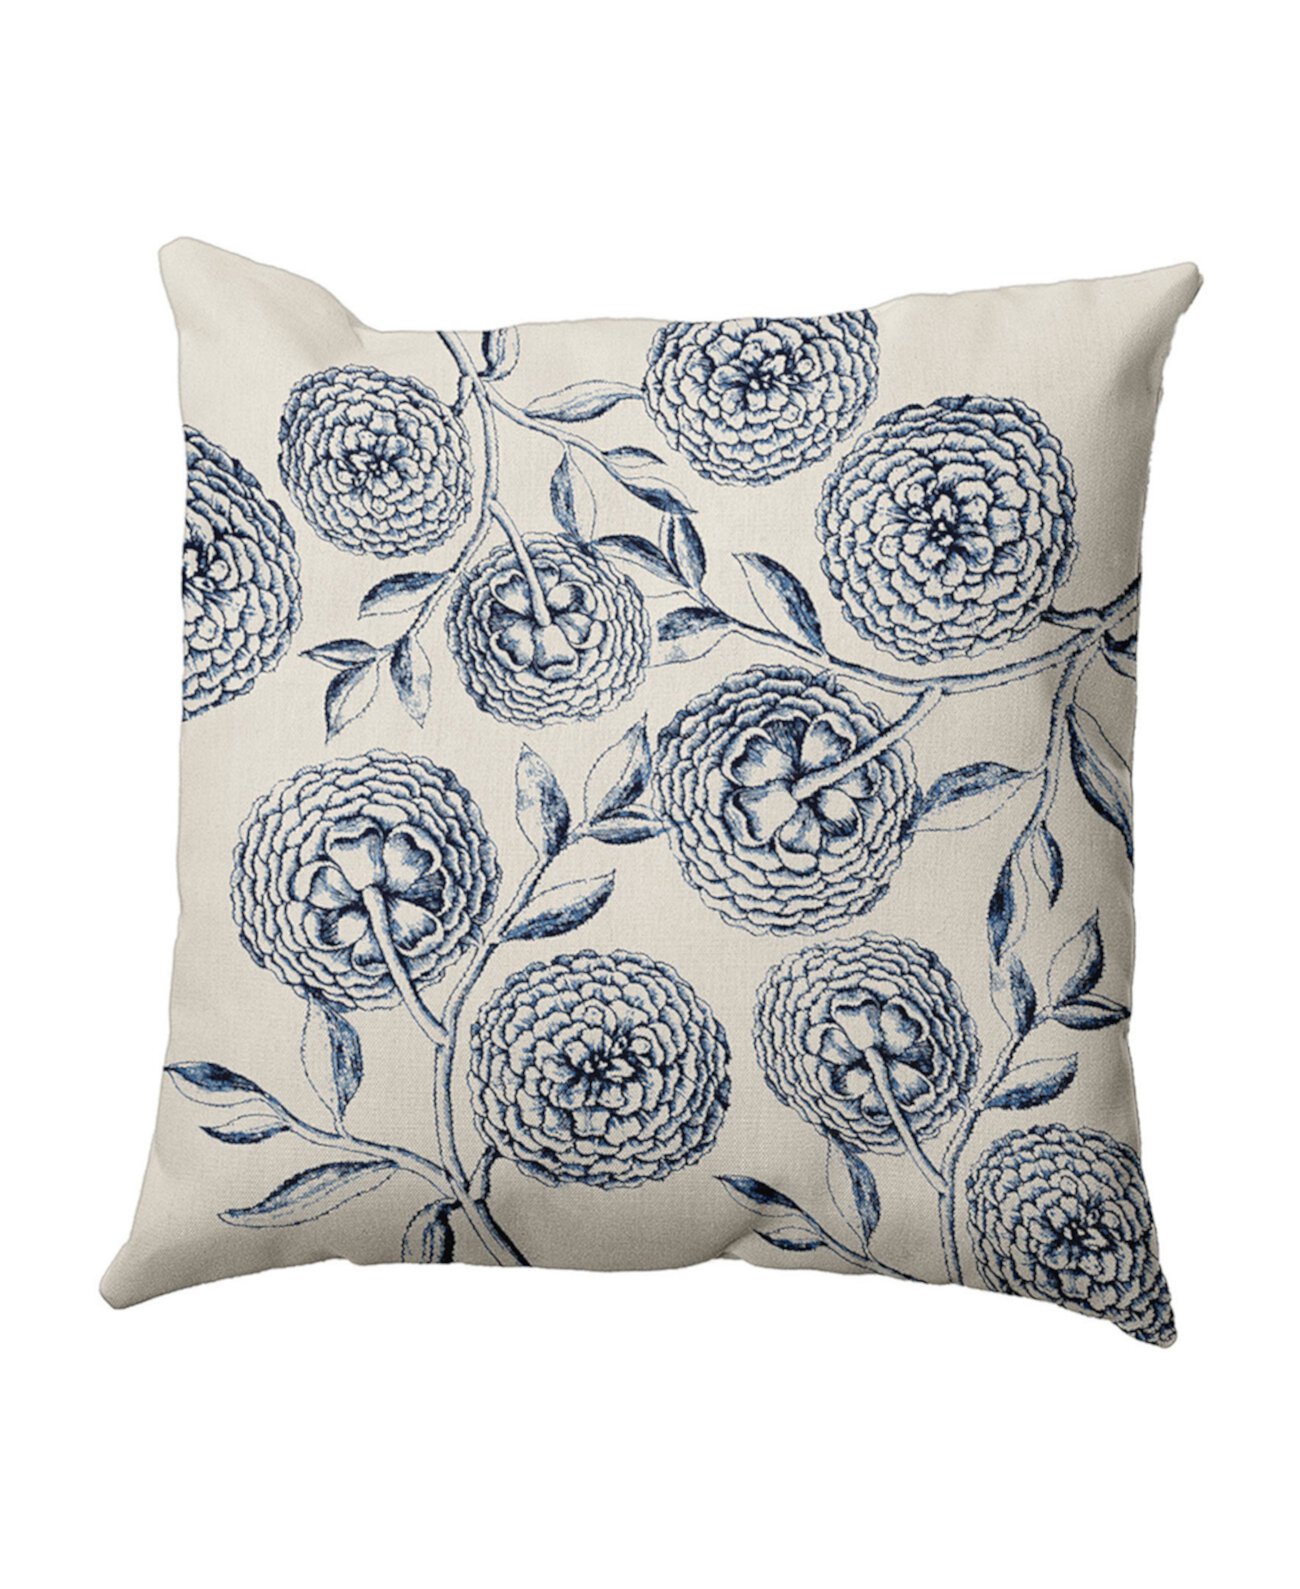 16-дюймовая темно-синяя и синяя декоративная подушка с цветочным рисунком Antique Flowers E by Design